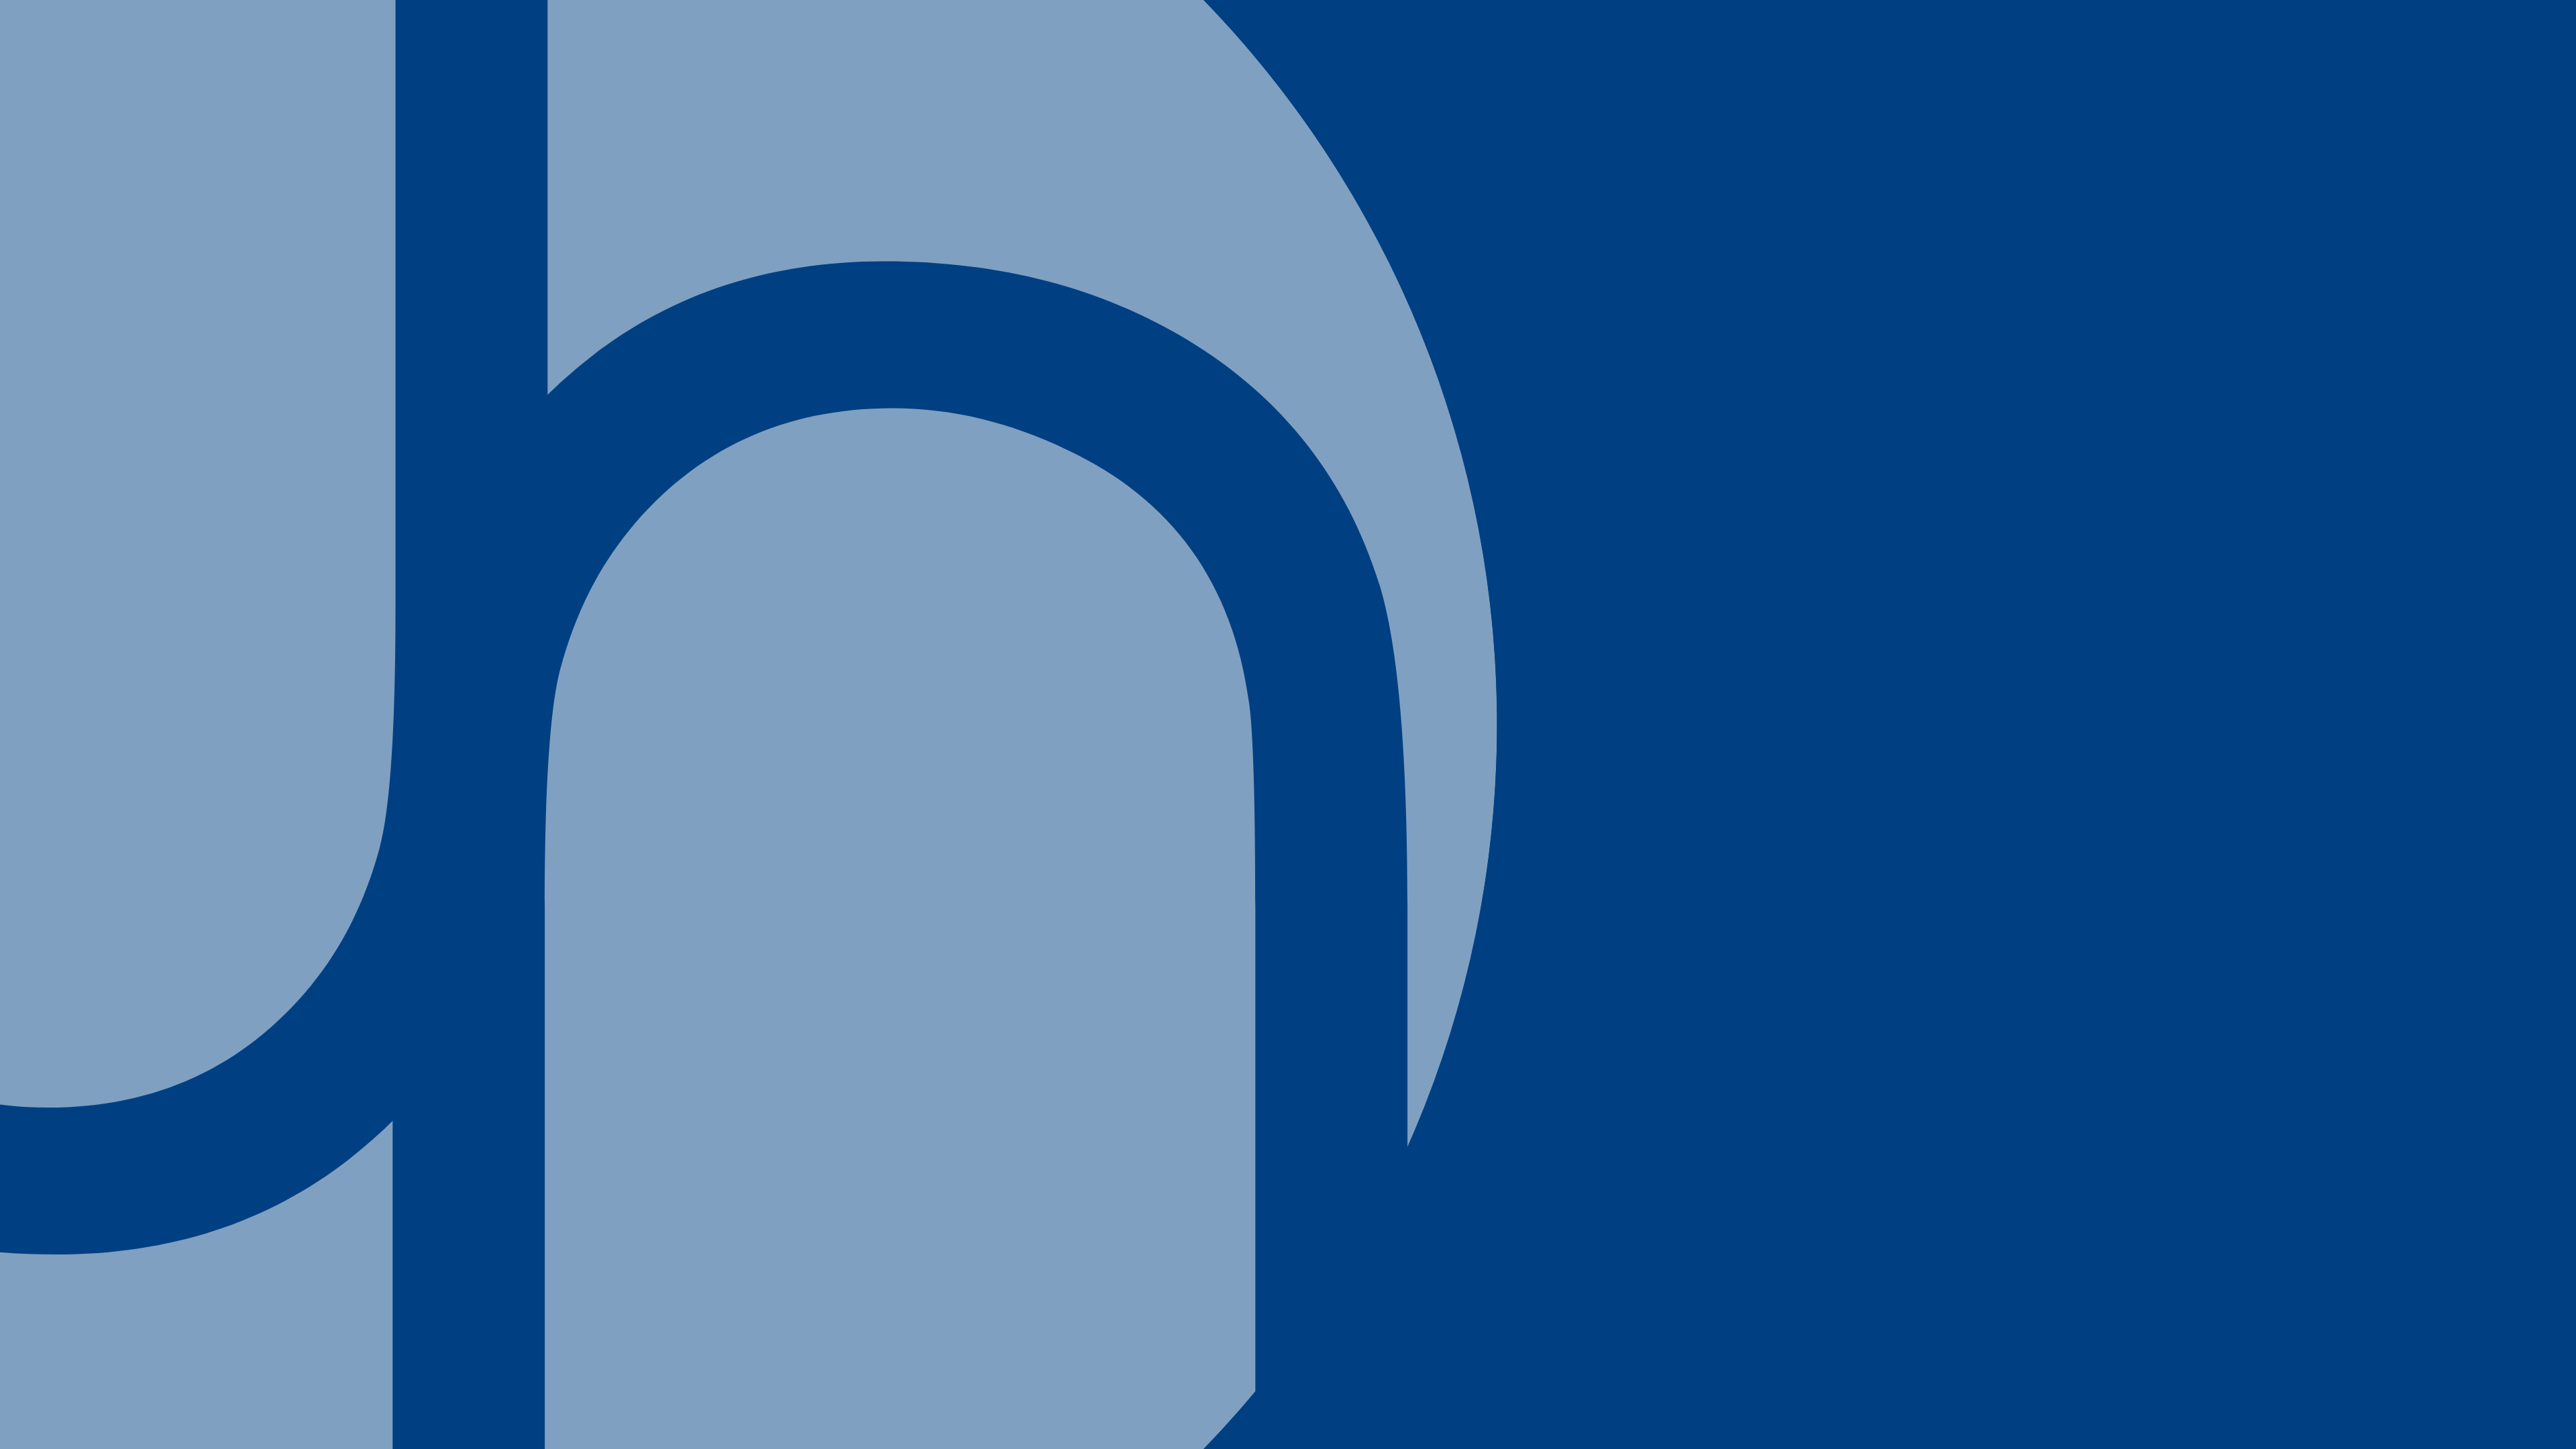 ユートラストのロゴデザイン入りの青い背景